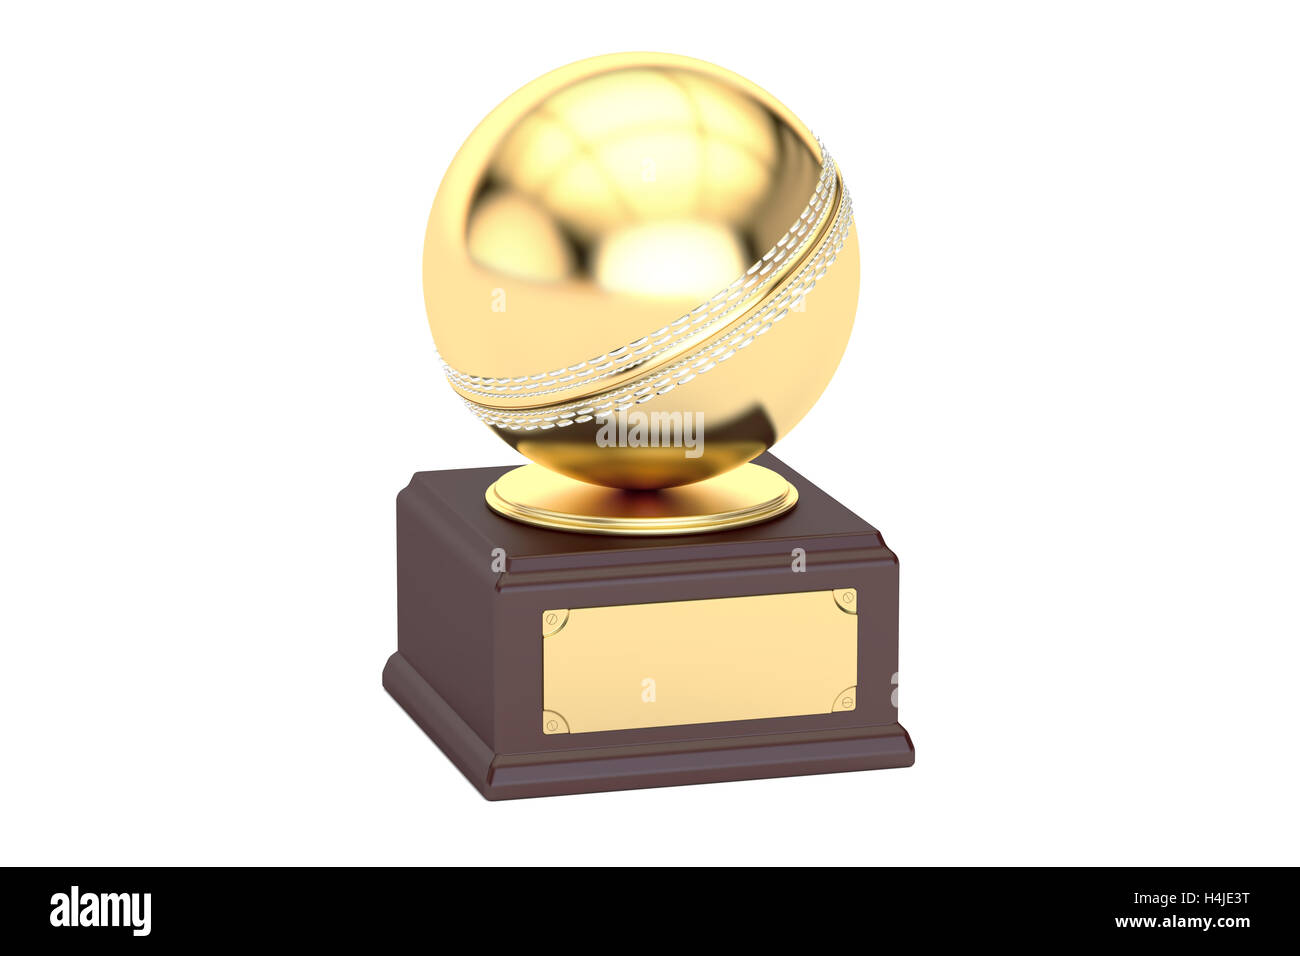 Prix Gold Cup cricket, rendu 3D isolé sur fond blanc Banque D'Images